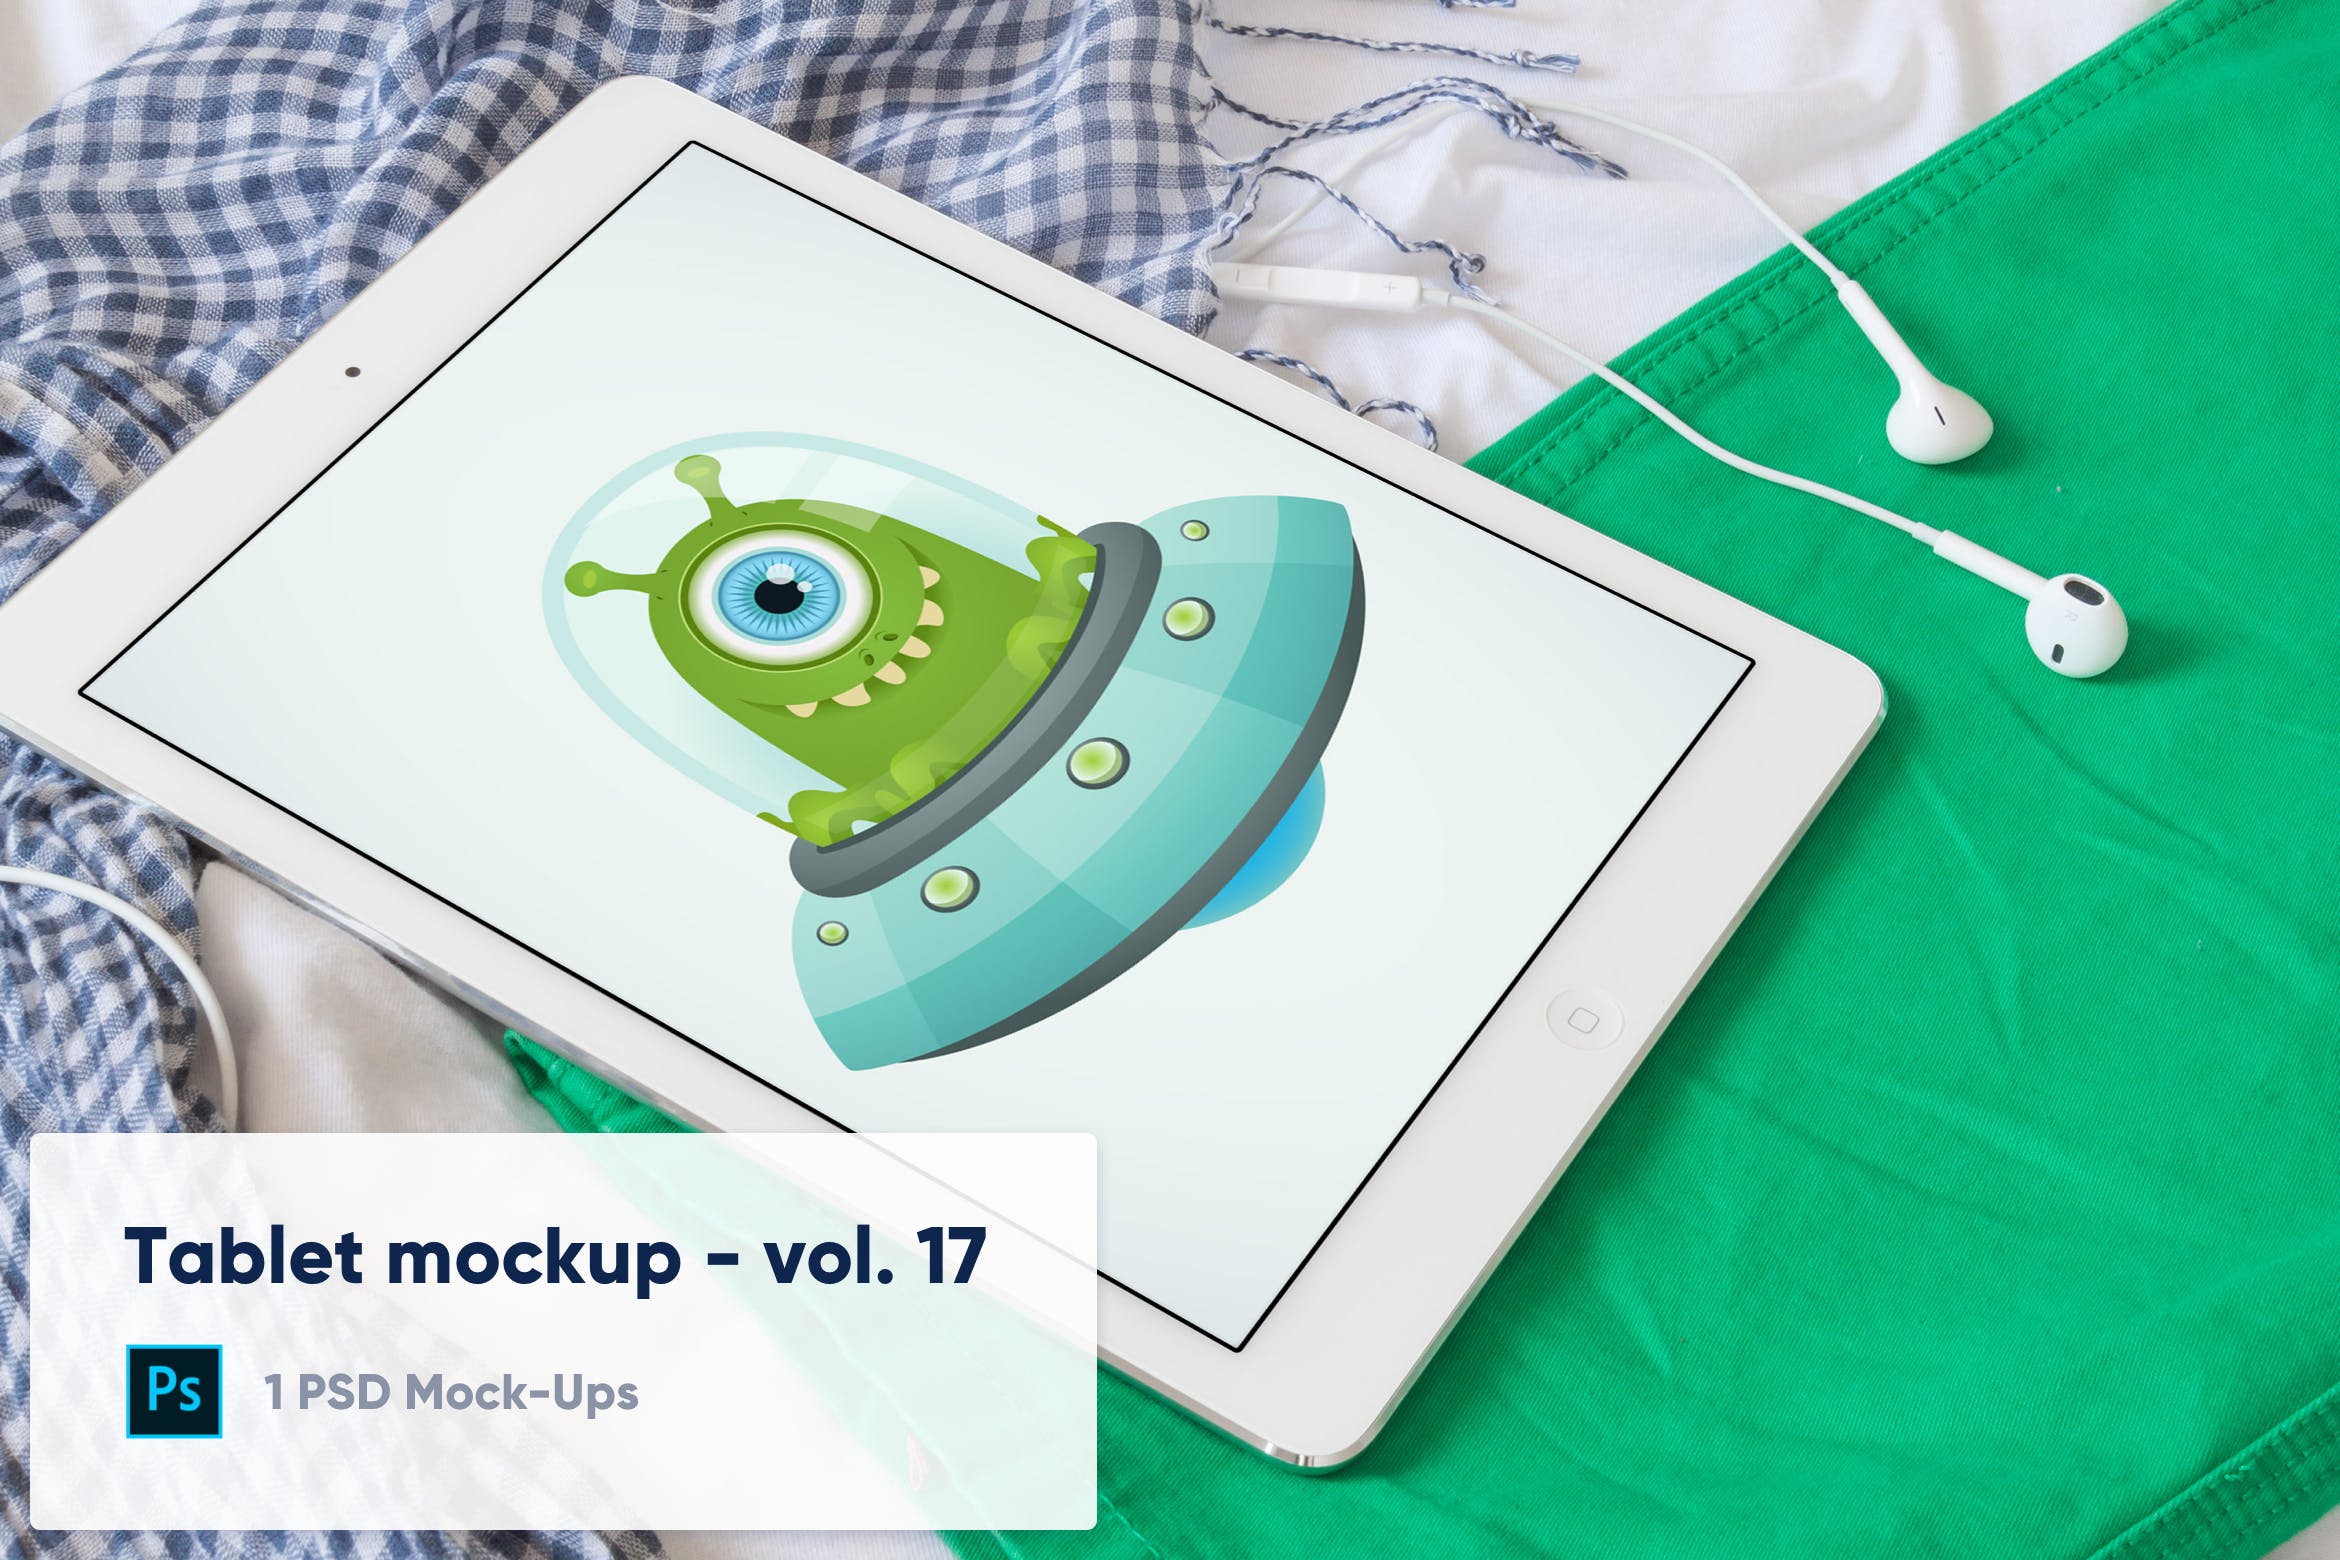 居家环境场景平板电脑屏幕演示16图库精选样机模板v17 Tablet on Colorful Clothes Mockup – Vol. 17插图